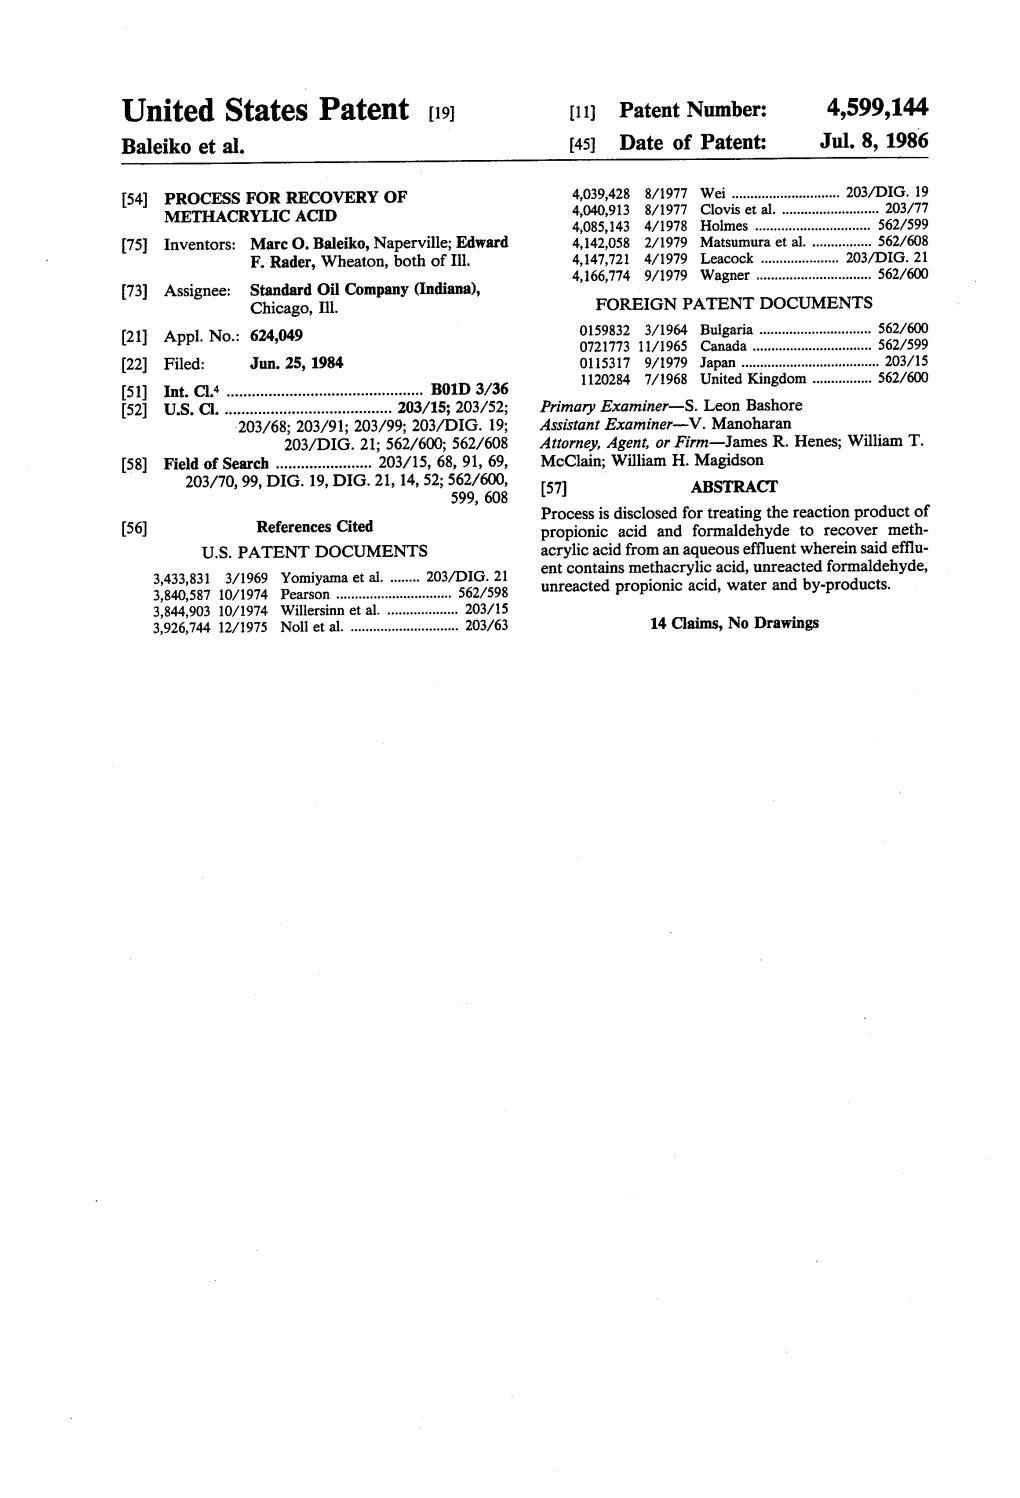 United States Patent 19 11 Patent Number: 4,599,144 Baleiko Et Al